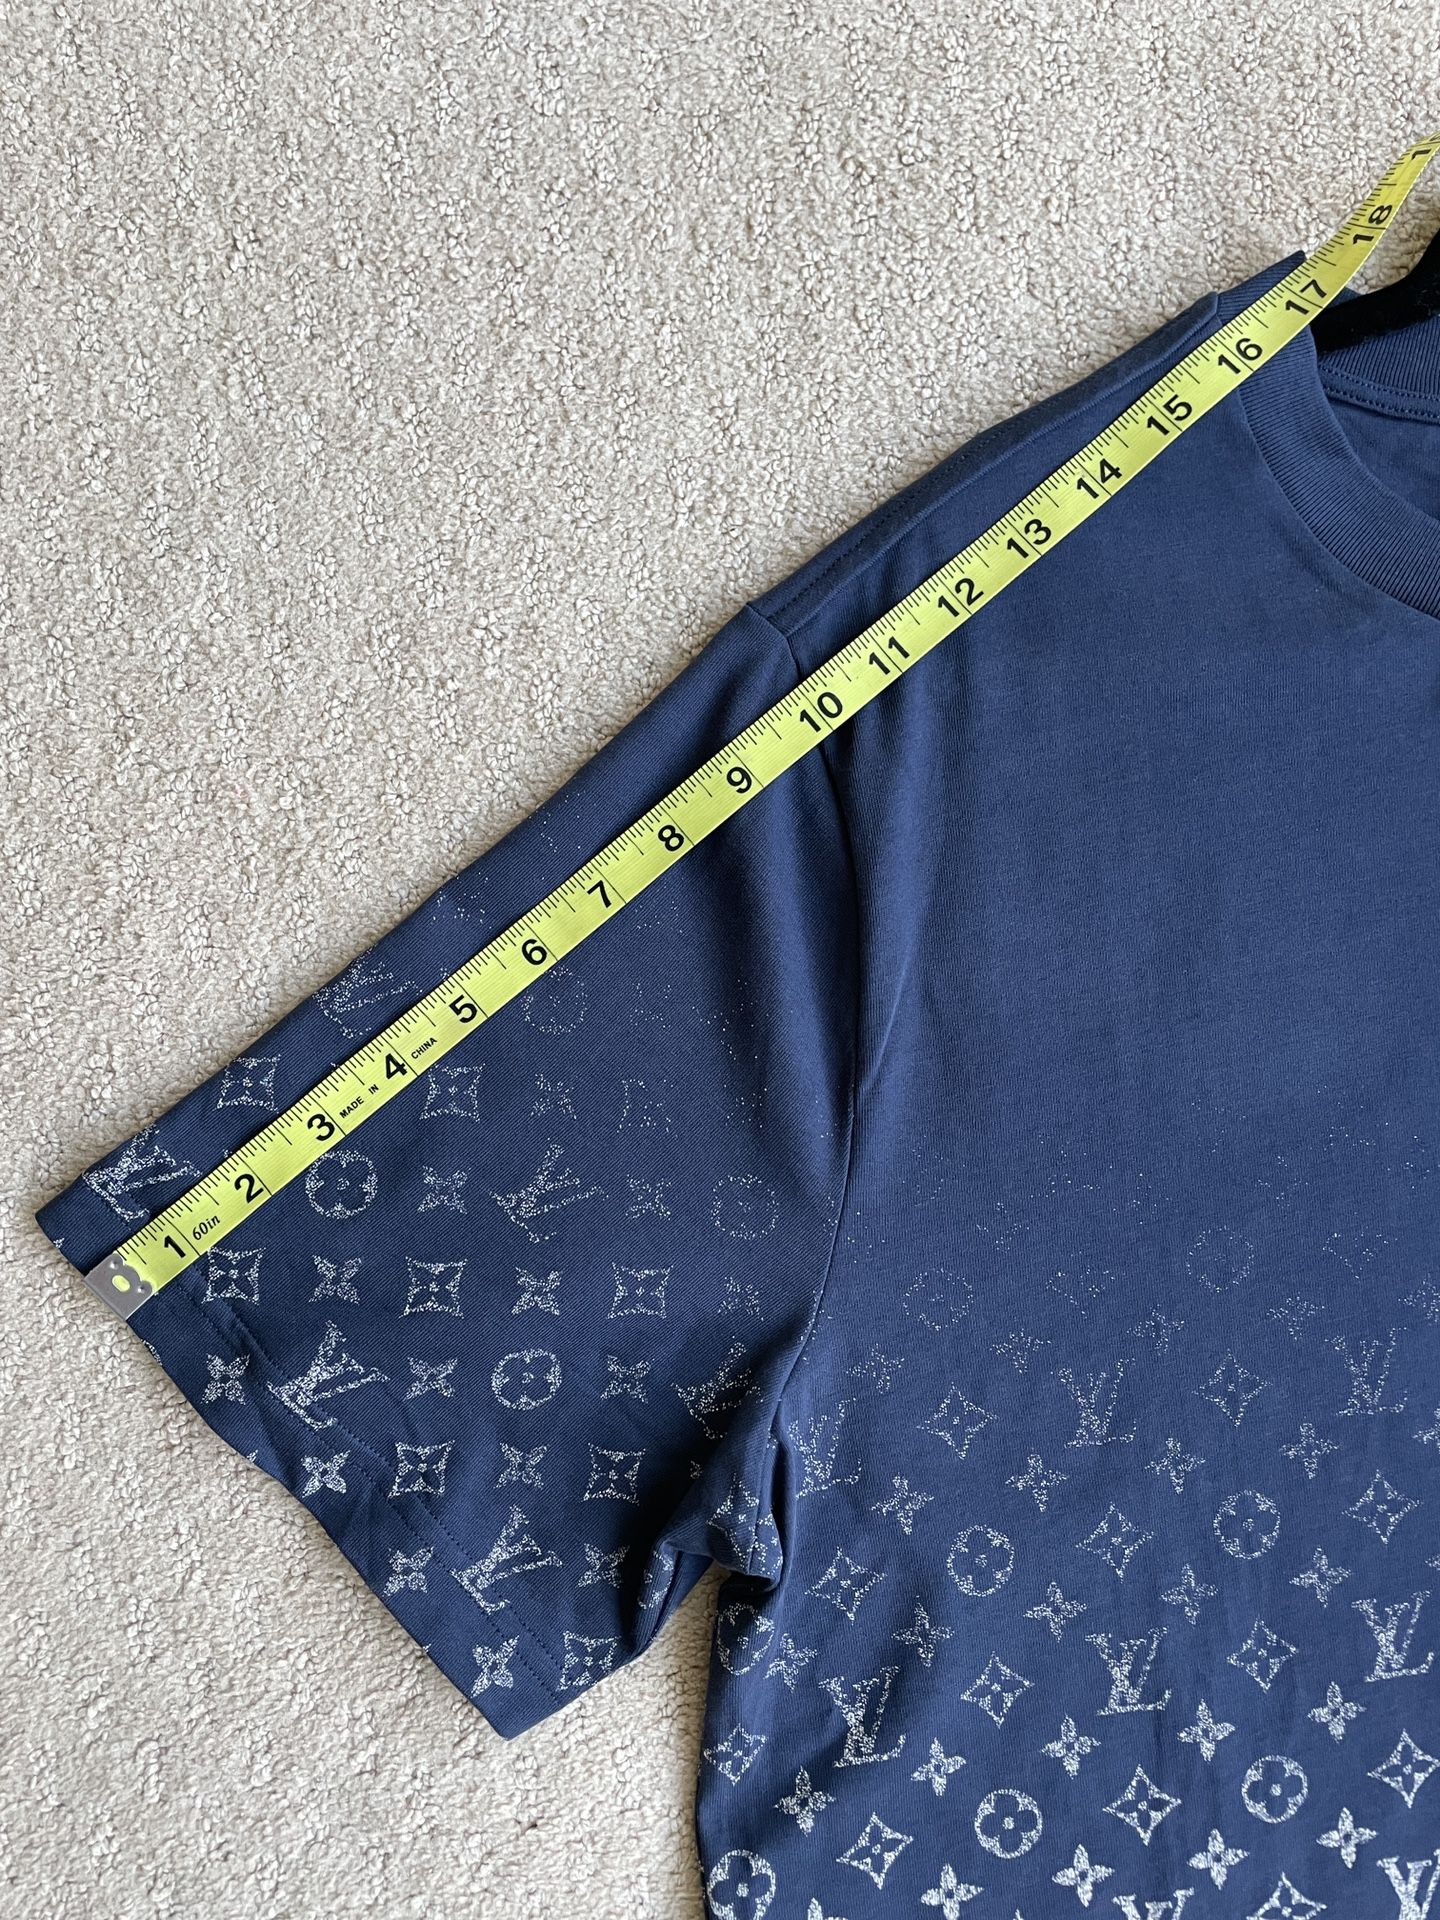 New Louis Vuitton Virgil Abloh Gradient Monogram Motif Shirt for